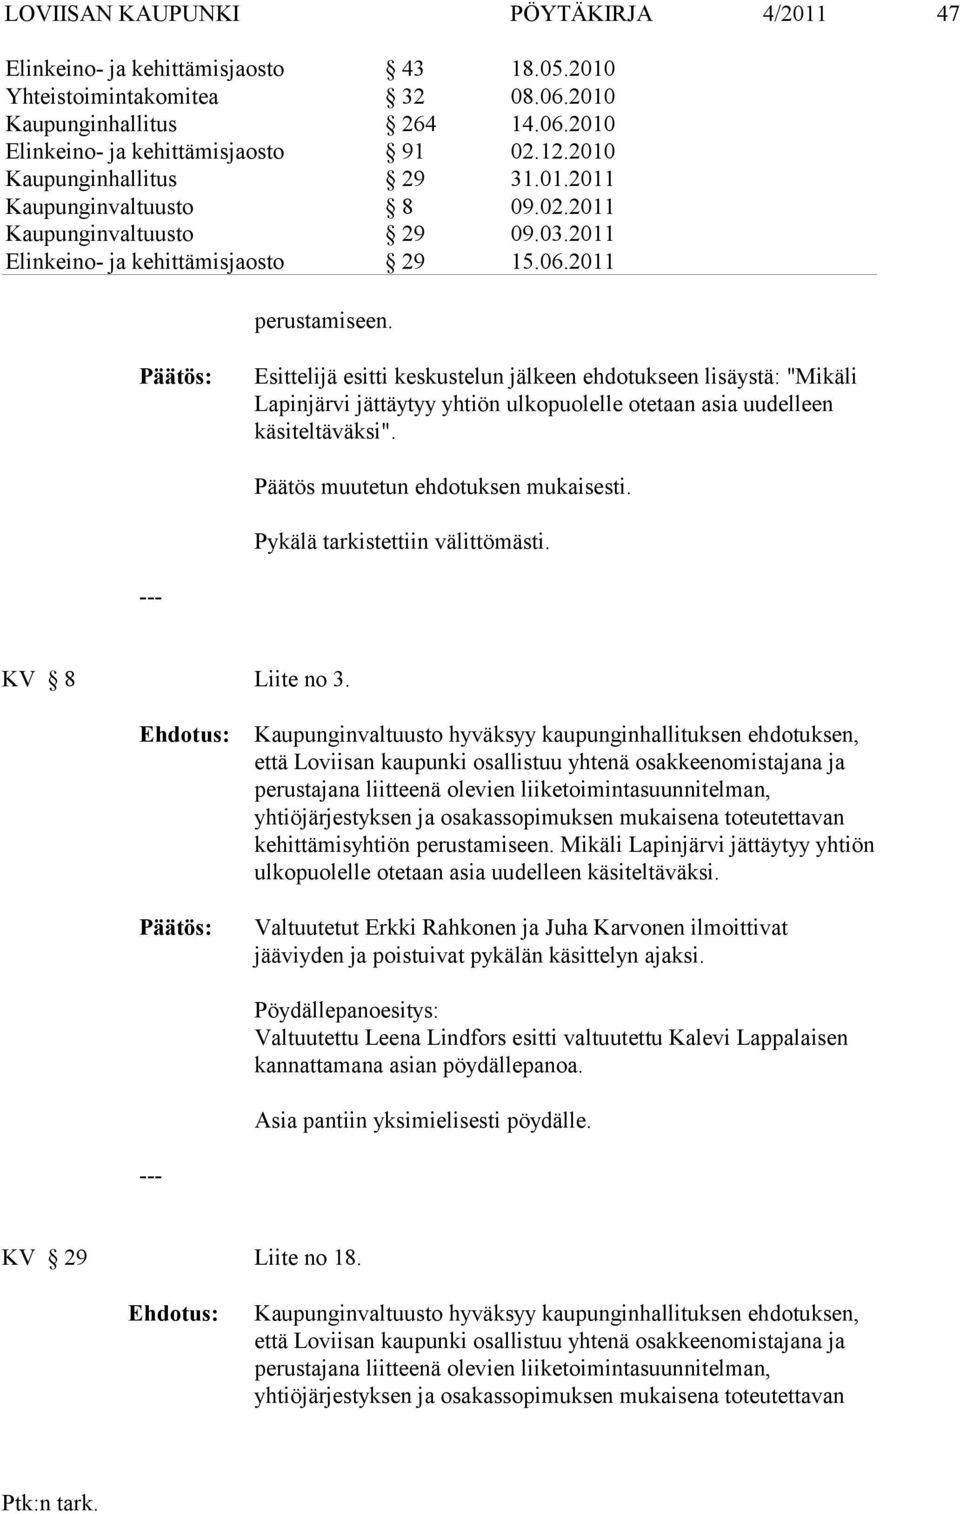 Esittelijä esitti keskustelun jälkeen ehdotukseen lisäystä: "Mikäli Lapinjärvi jättäytyy yhtiön ulkopuolelle otetaan asia uudelleen käsiteltäväksi". Päätös muutetun ehdotuksen mukaisesti.